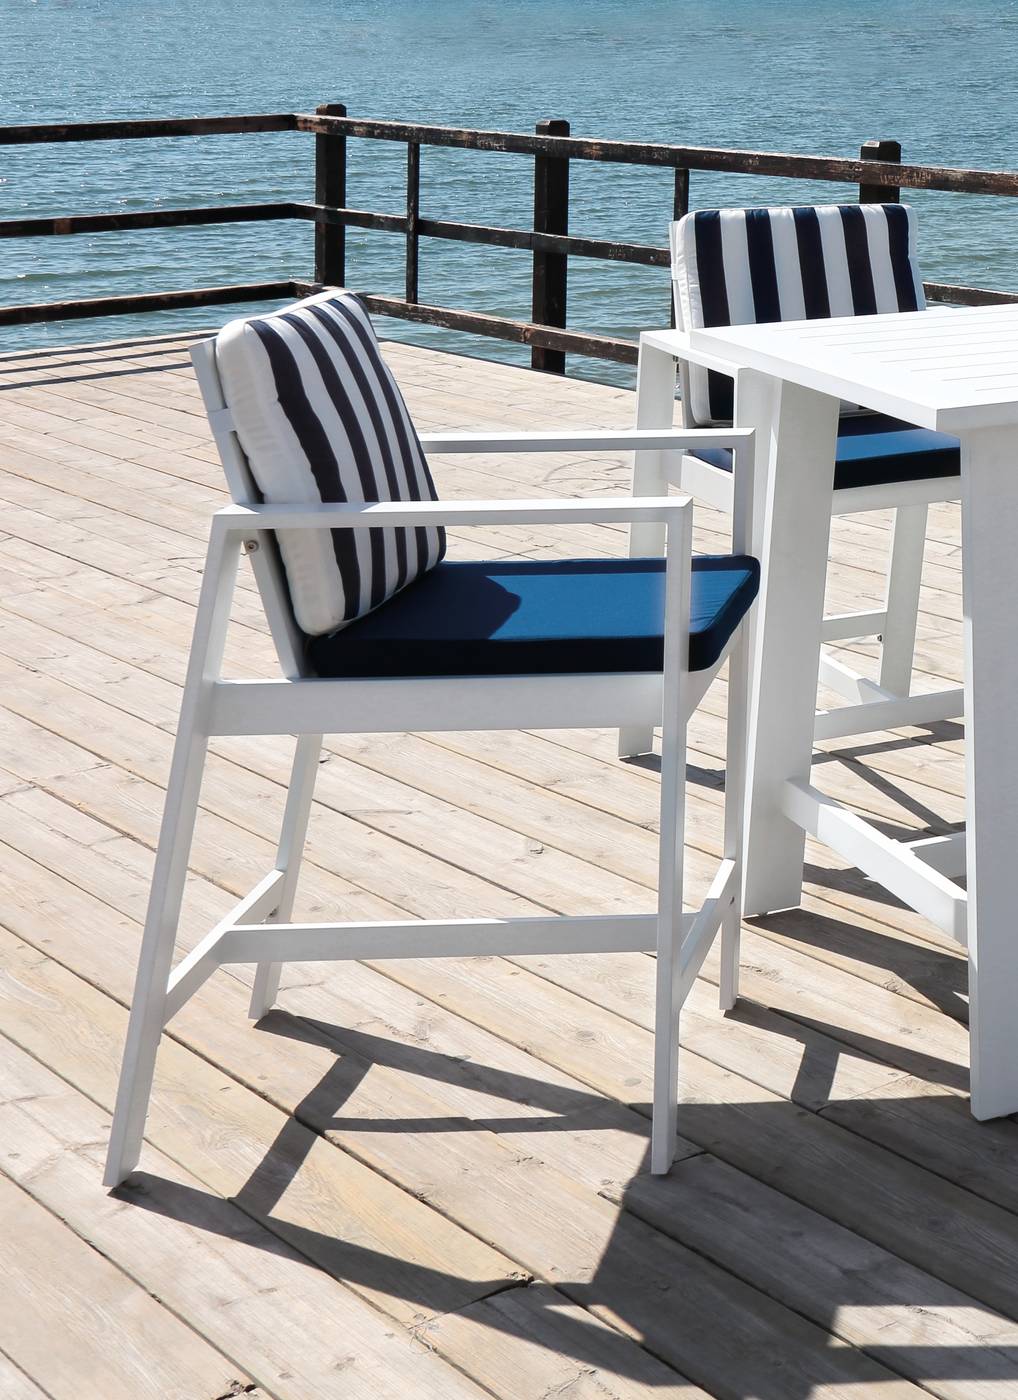 Lujoso sillón alto de coctel, para jardín o terraza. Disponible en color blanco, antracita y champagne.